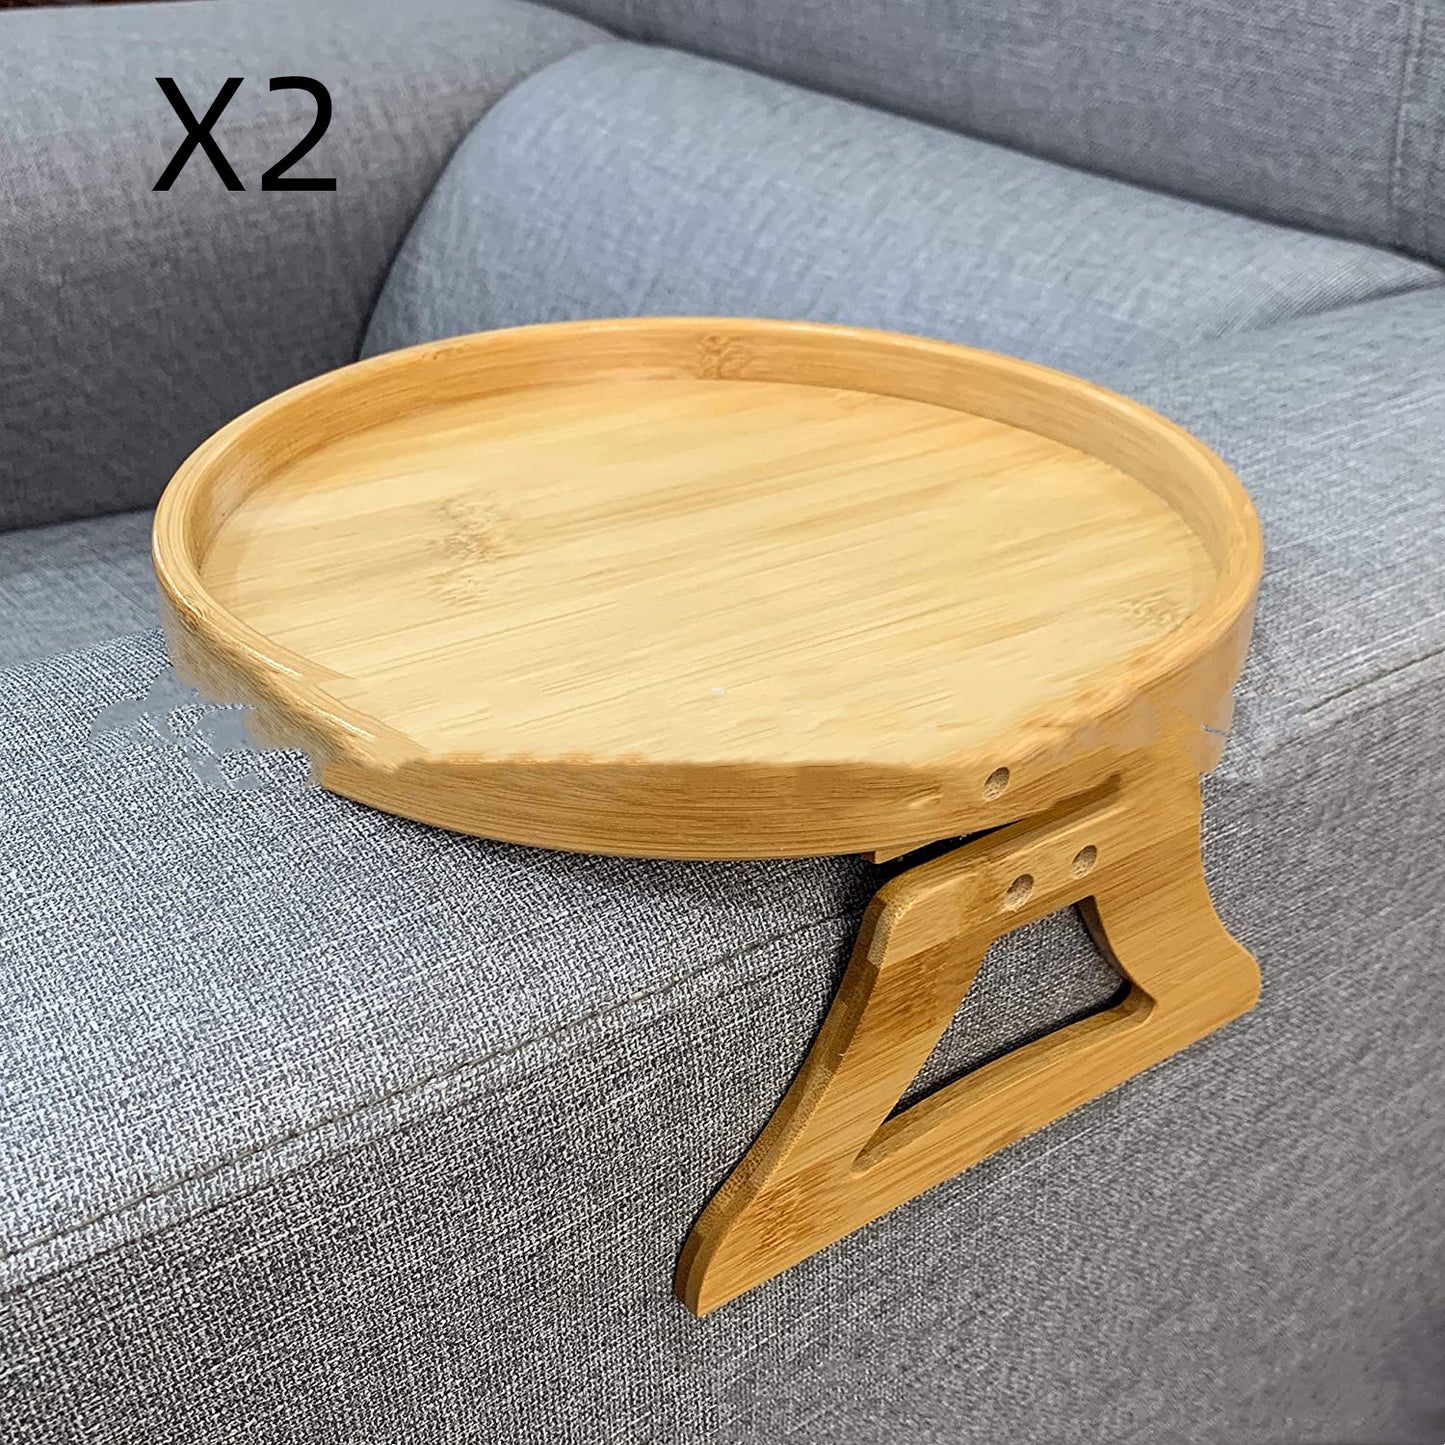 Potable Sofa Tray Table Wood Armrest Clip-On Tray